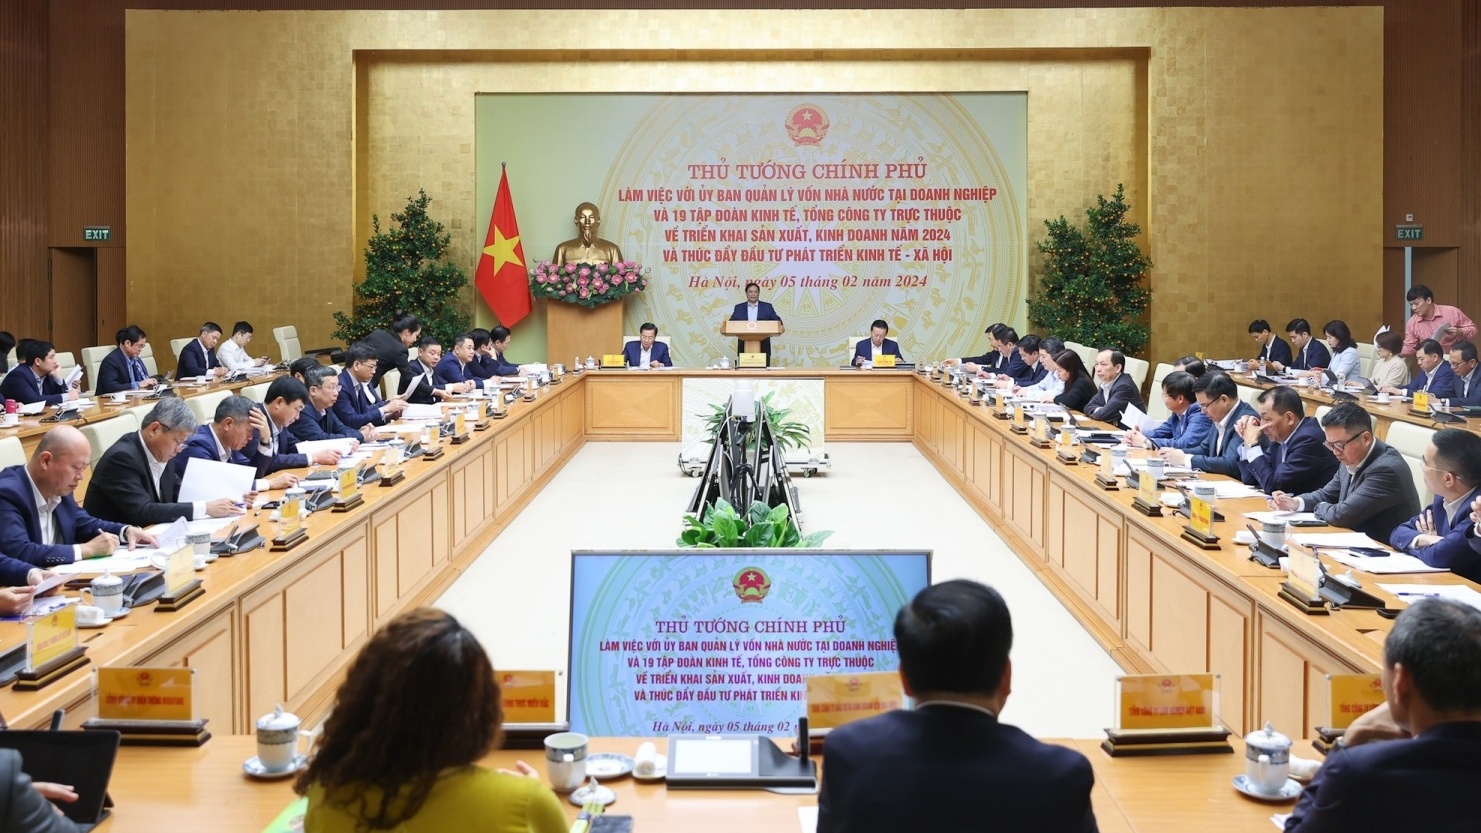 Thủ tướng Phạm Minh Chính: "Petrovietnam những năm gần đây đã hoạt động đạt kết quả rất tích cực"